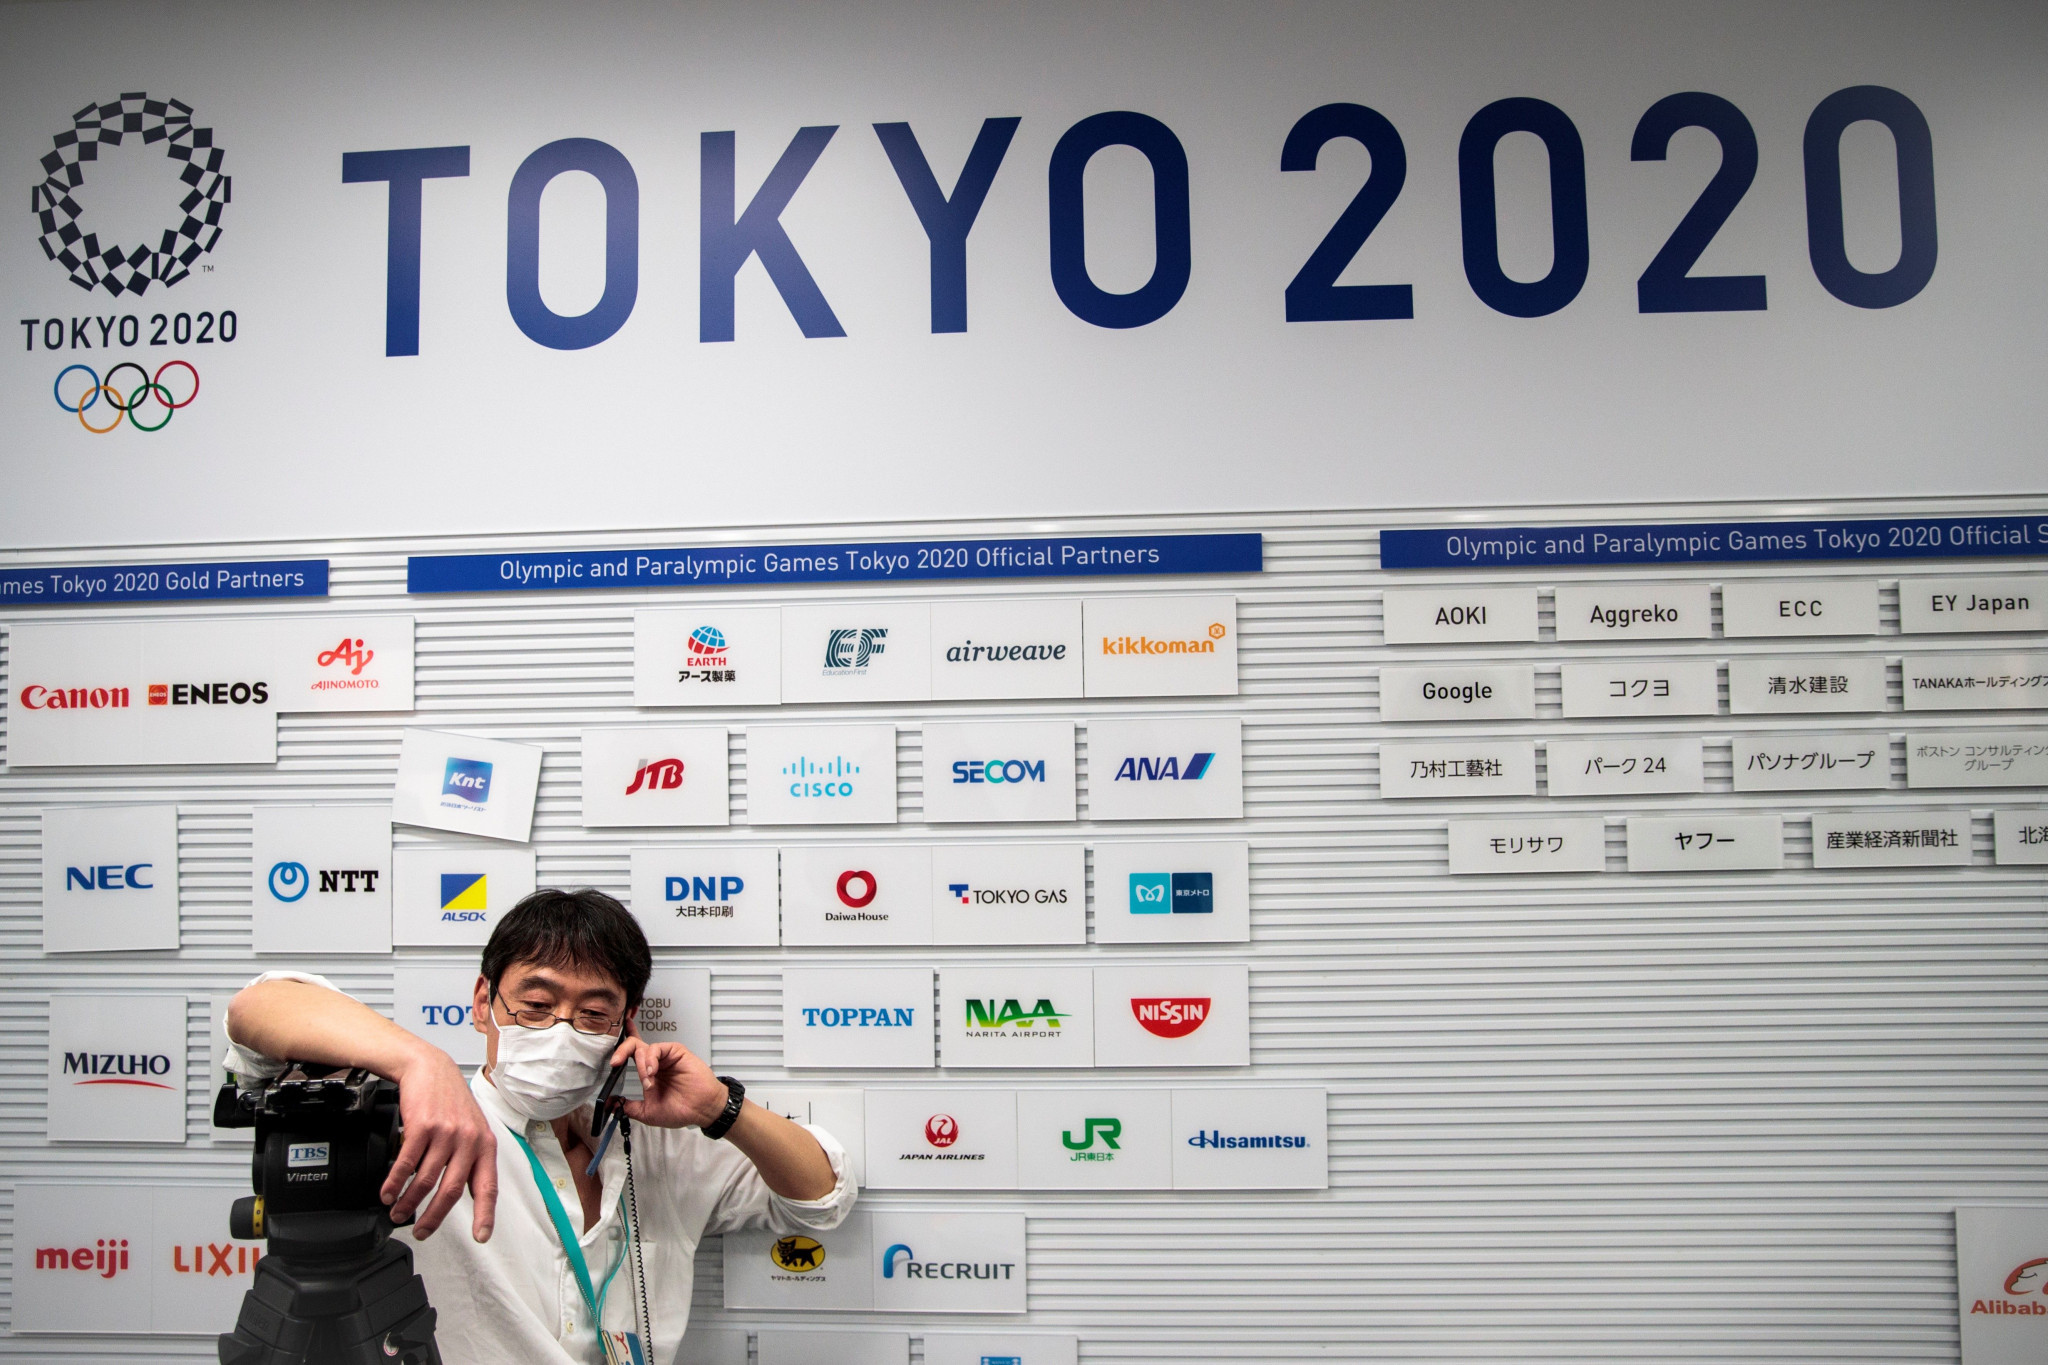 Tokyo 2020 aim to resume volunteer training in May